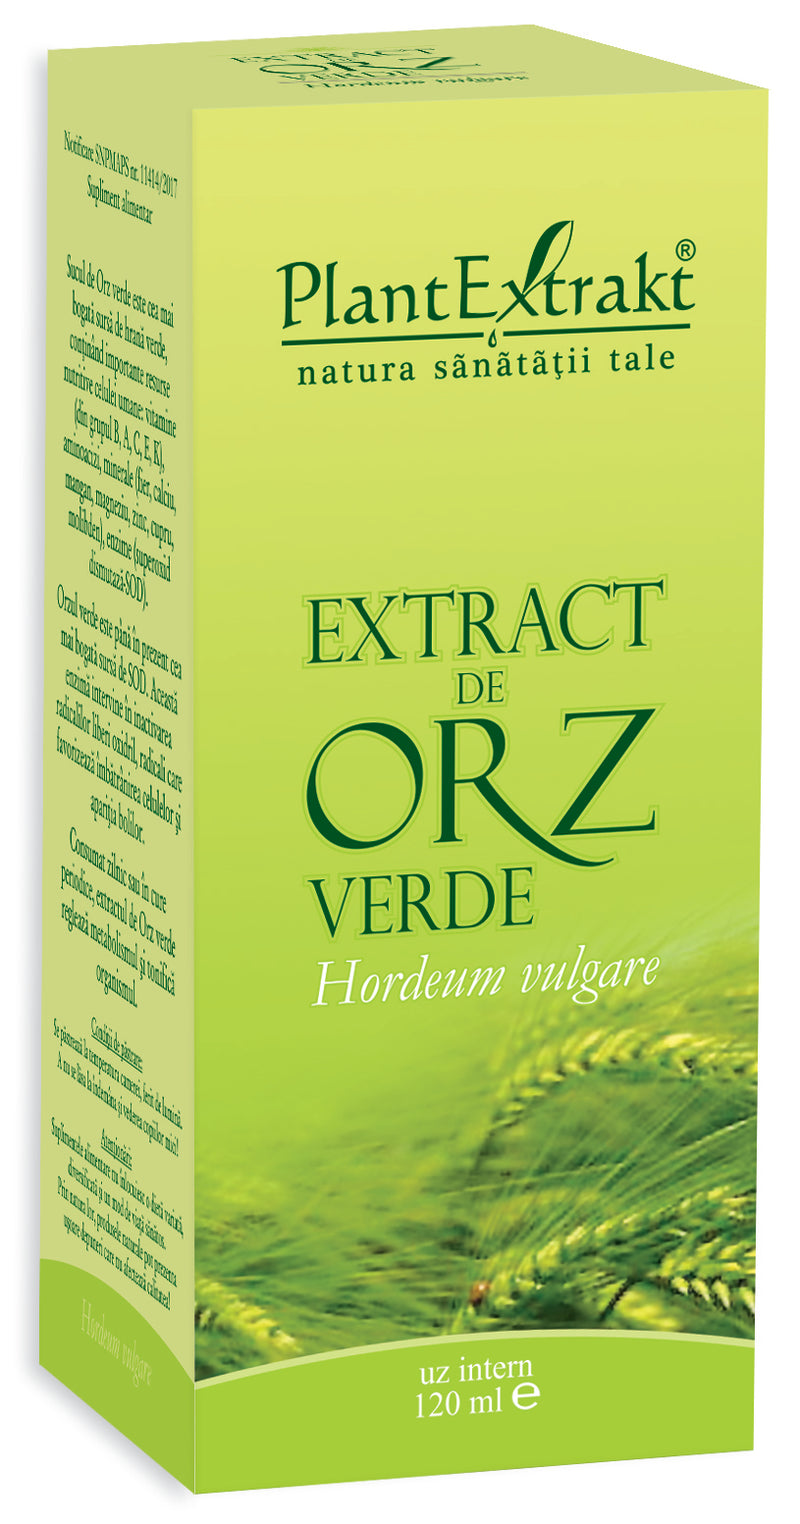 Extract de orz verde, 120 ml, plantextrakt 1